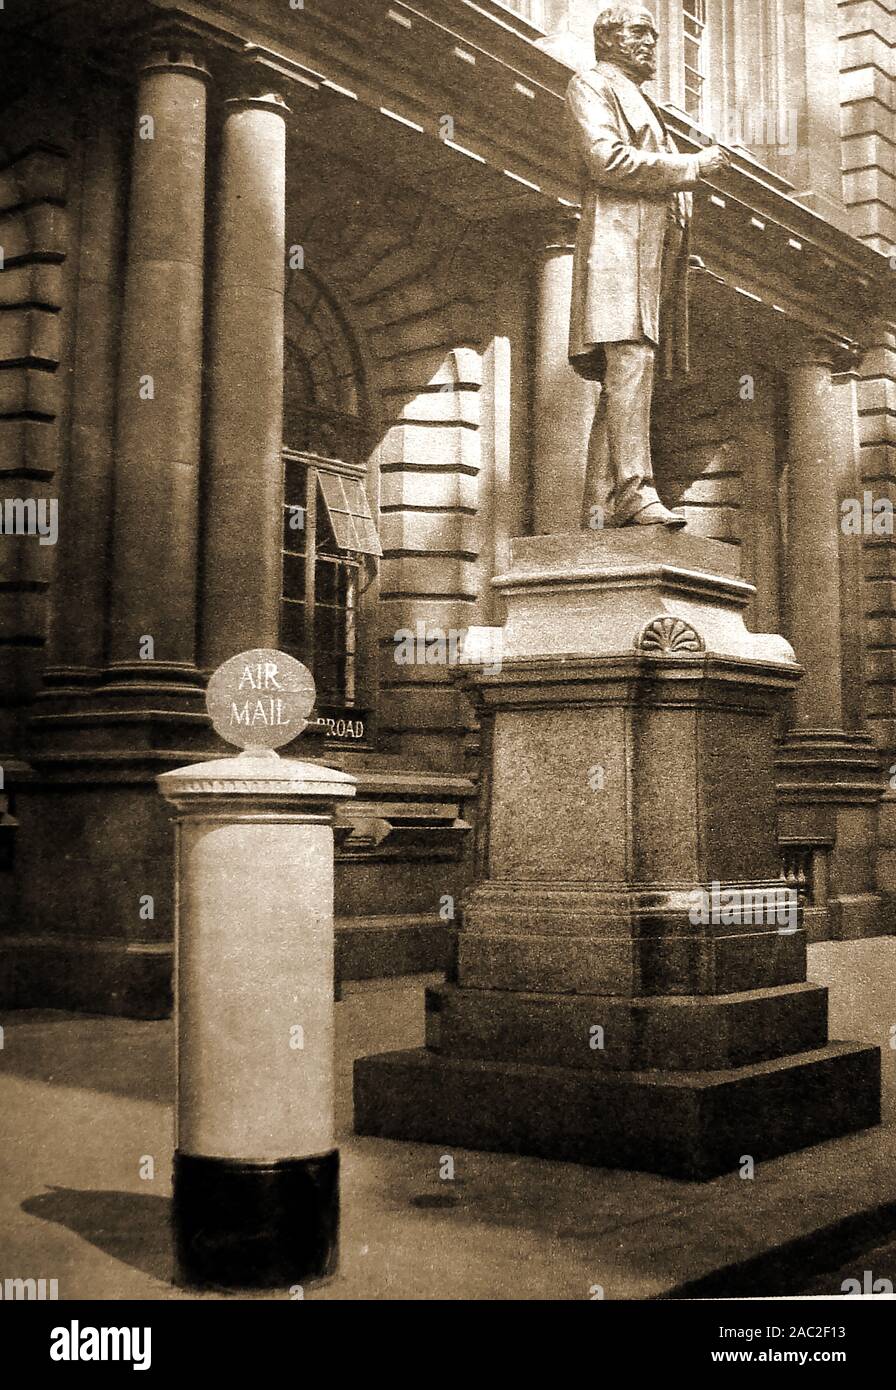 Historique 1934 Une photographie montrant la statue de Rowland Hill (1795-1879) à l'extérieur de la GPO (General Post Office) London, UK avec un avion dédié bleu postbox à côté Banque D'Images